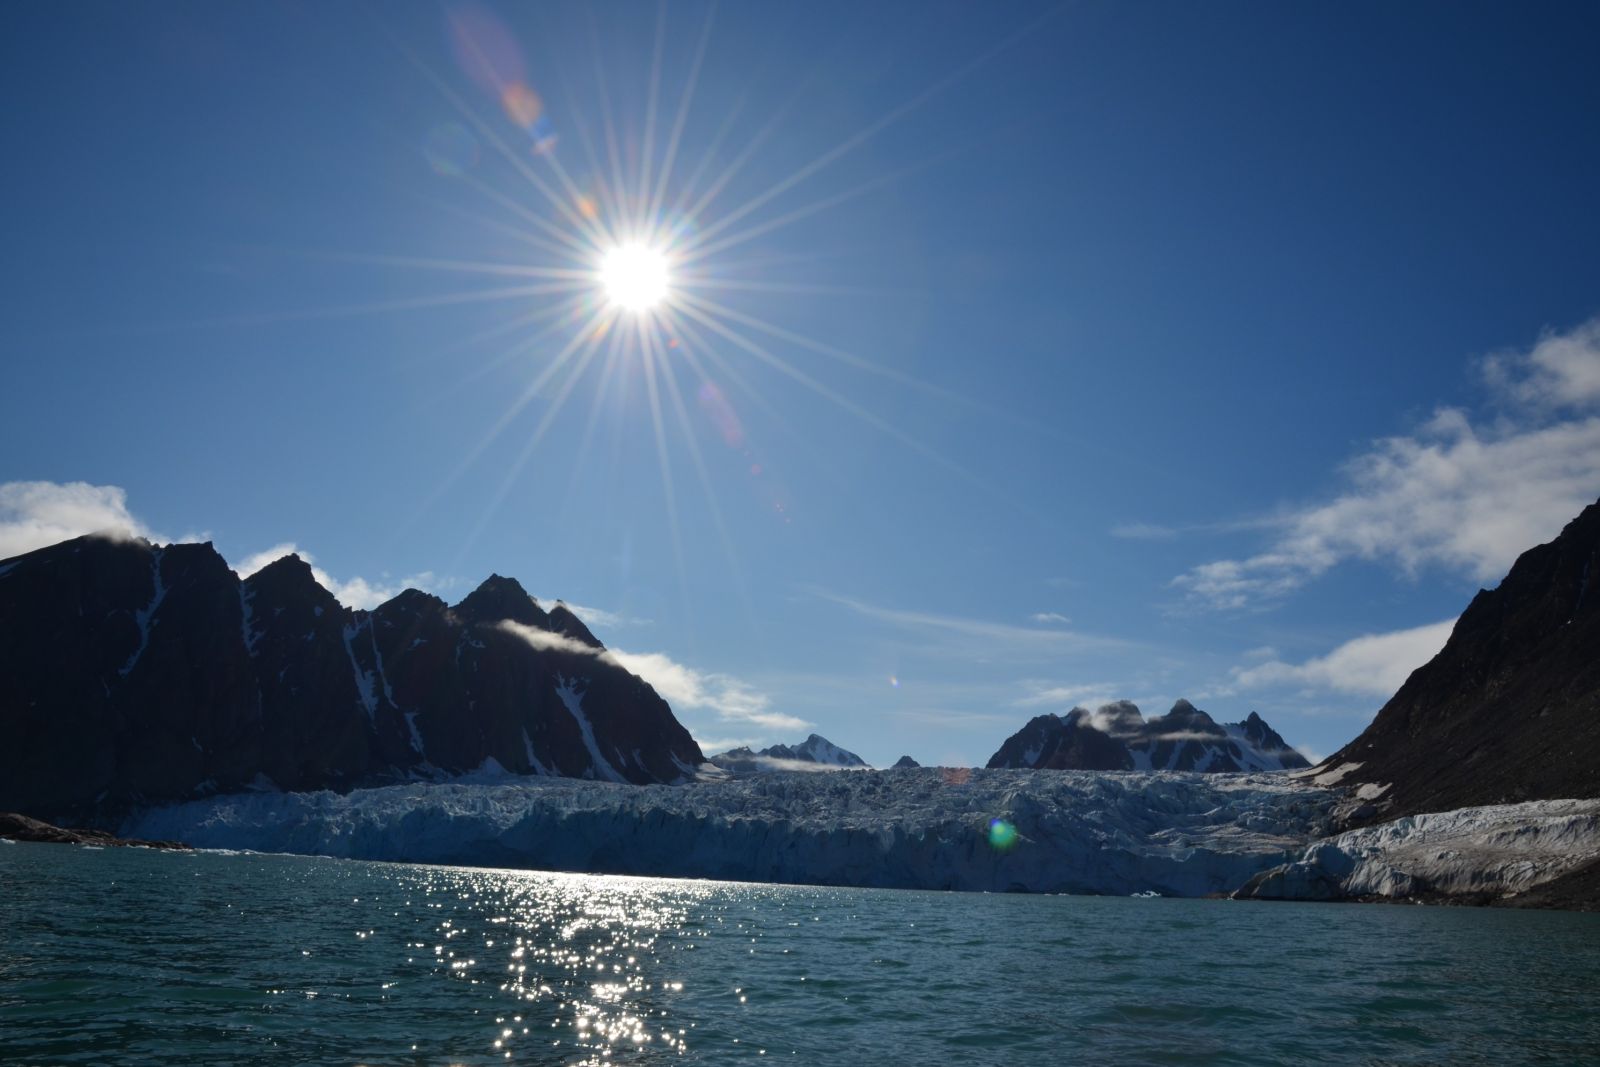 Küste Spitzbergens in strahlendem Sonnenschein